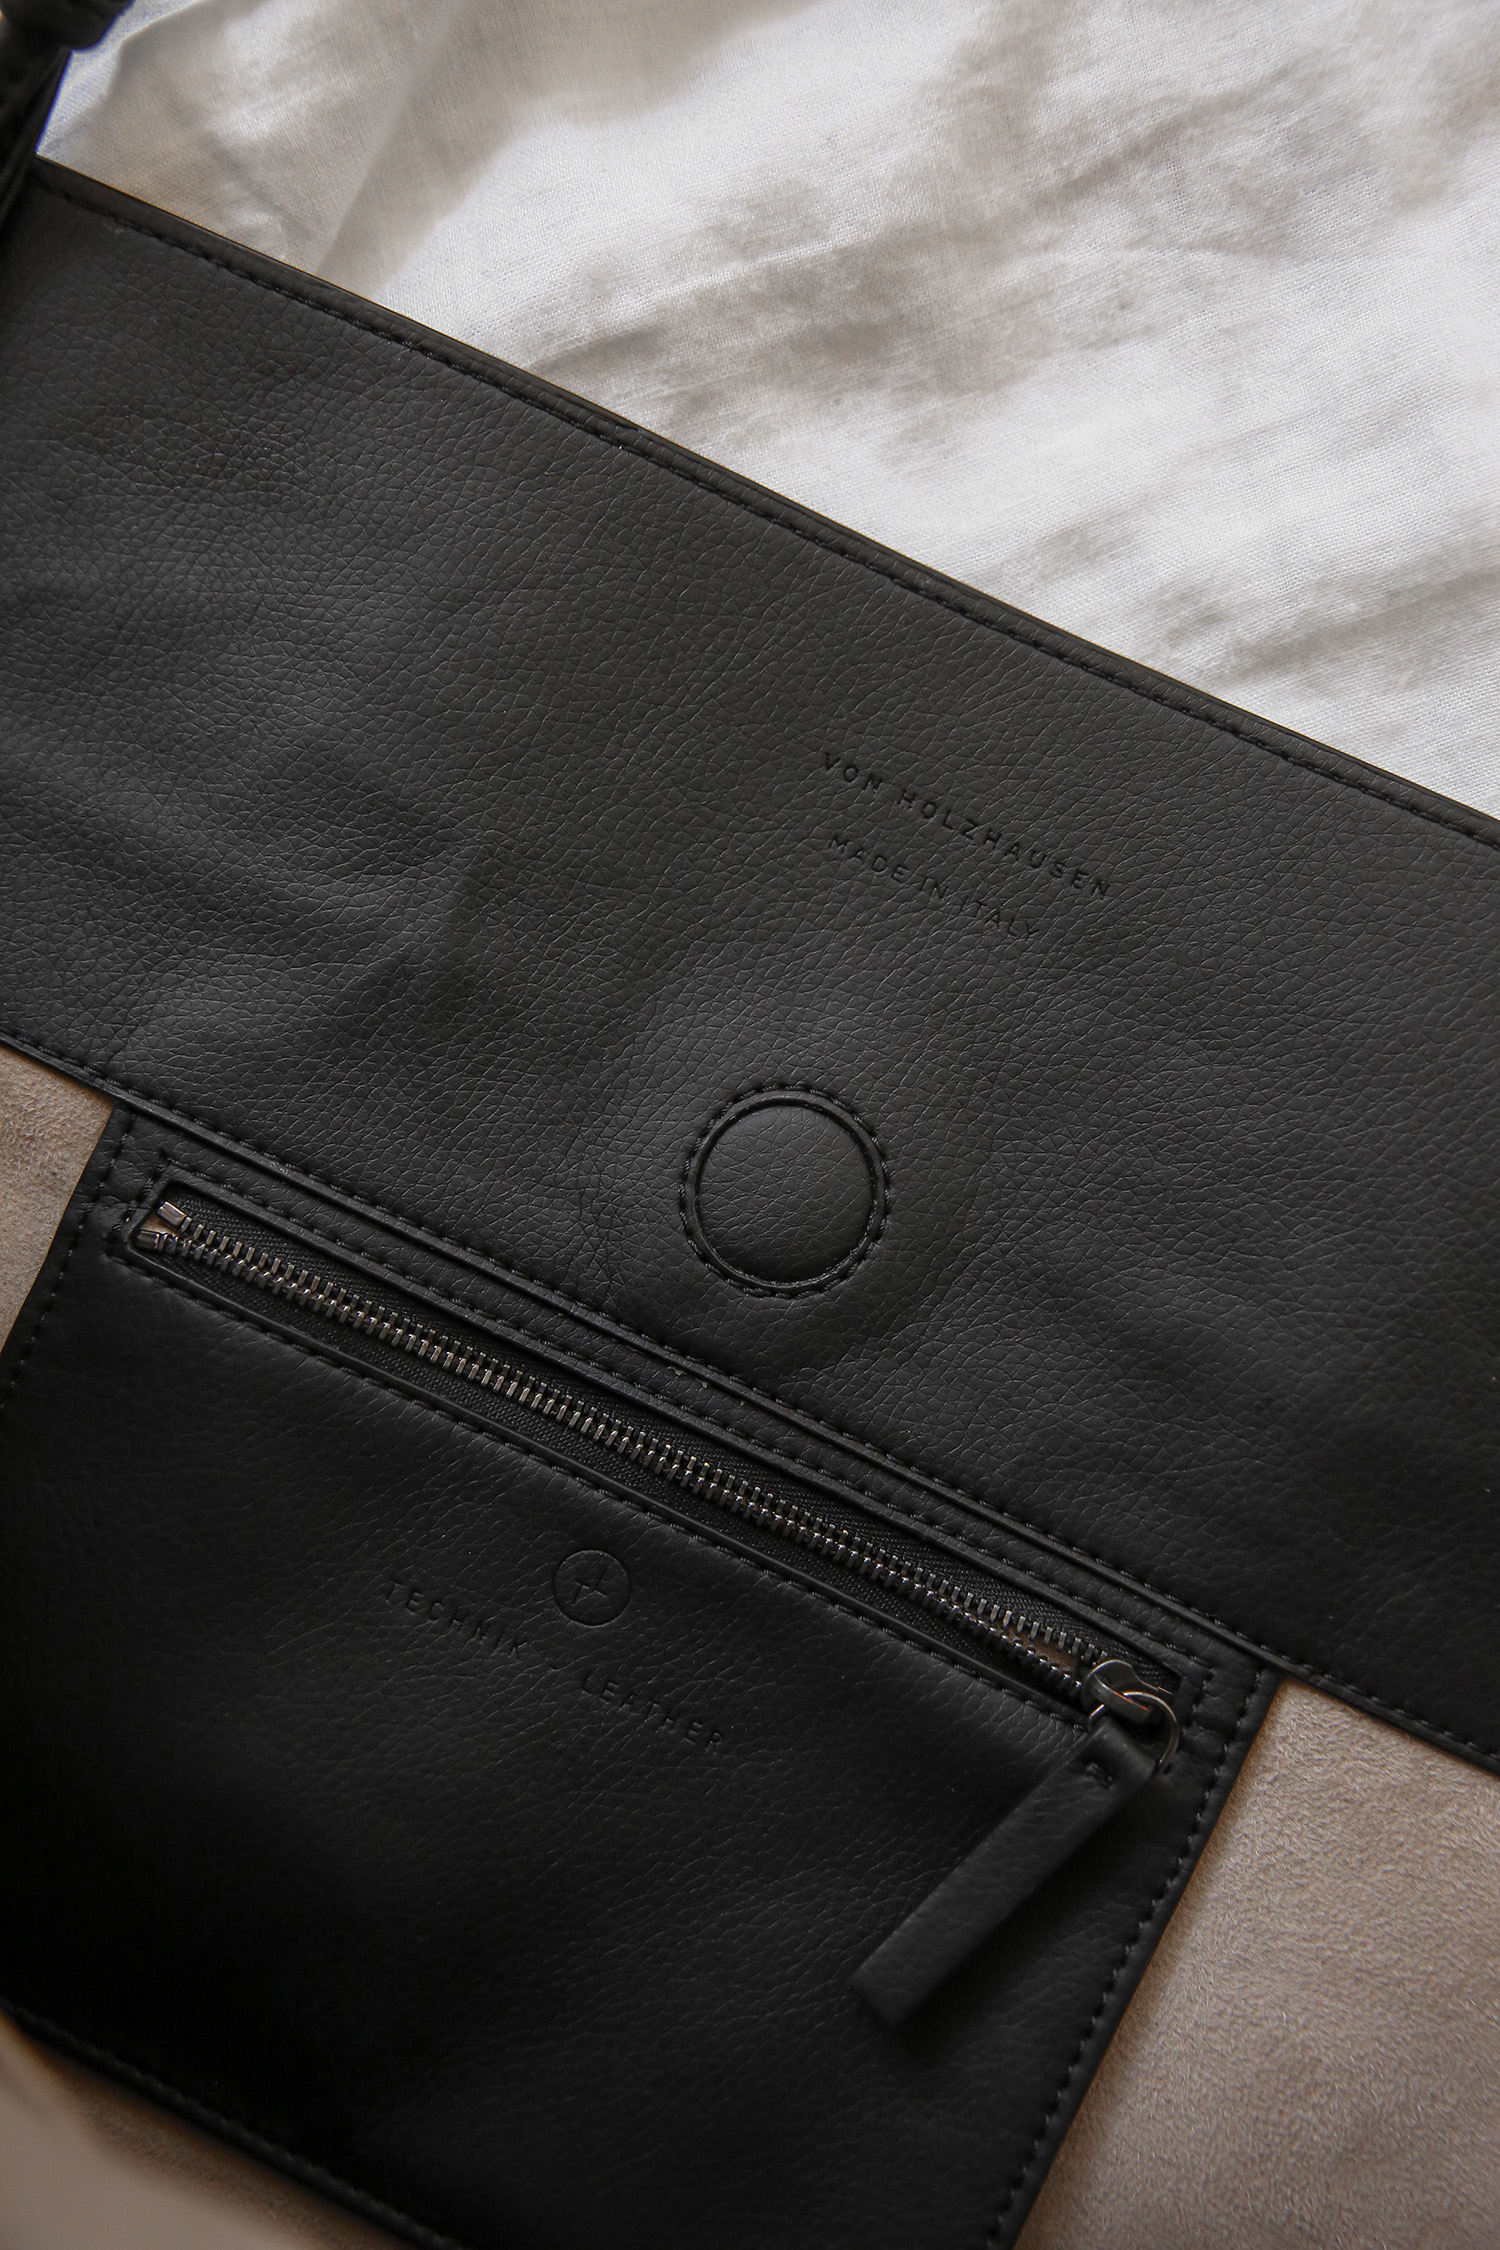 Black vegan leather bag details